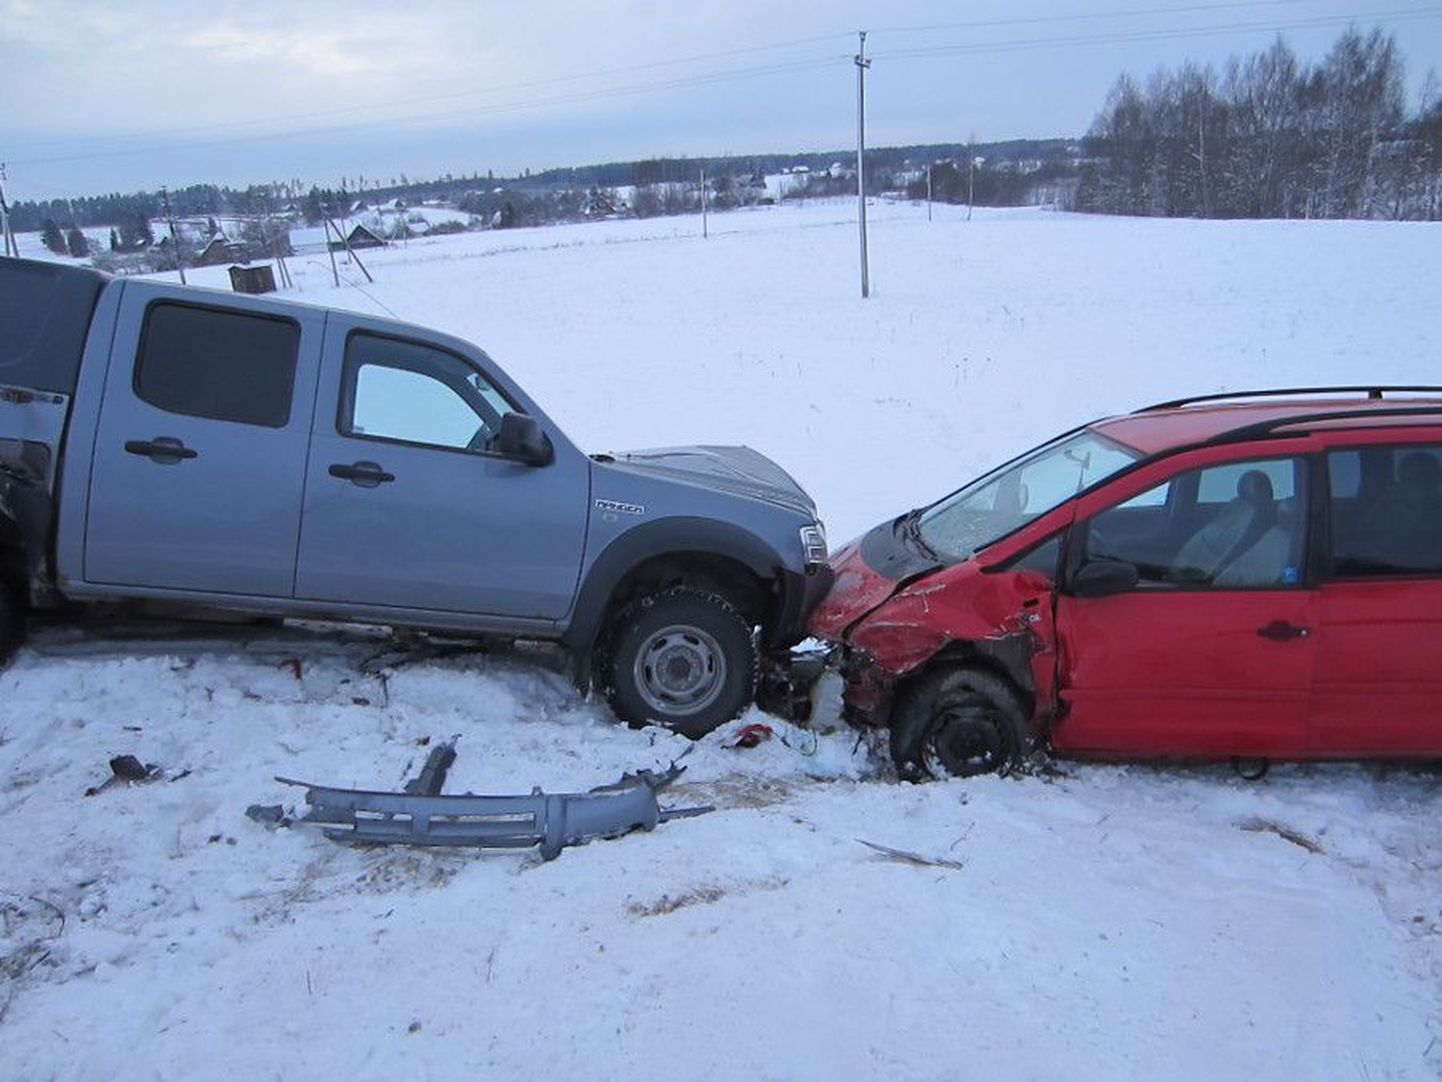 Liiklusõnnetus Puka vallas 11. jaanuaril